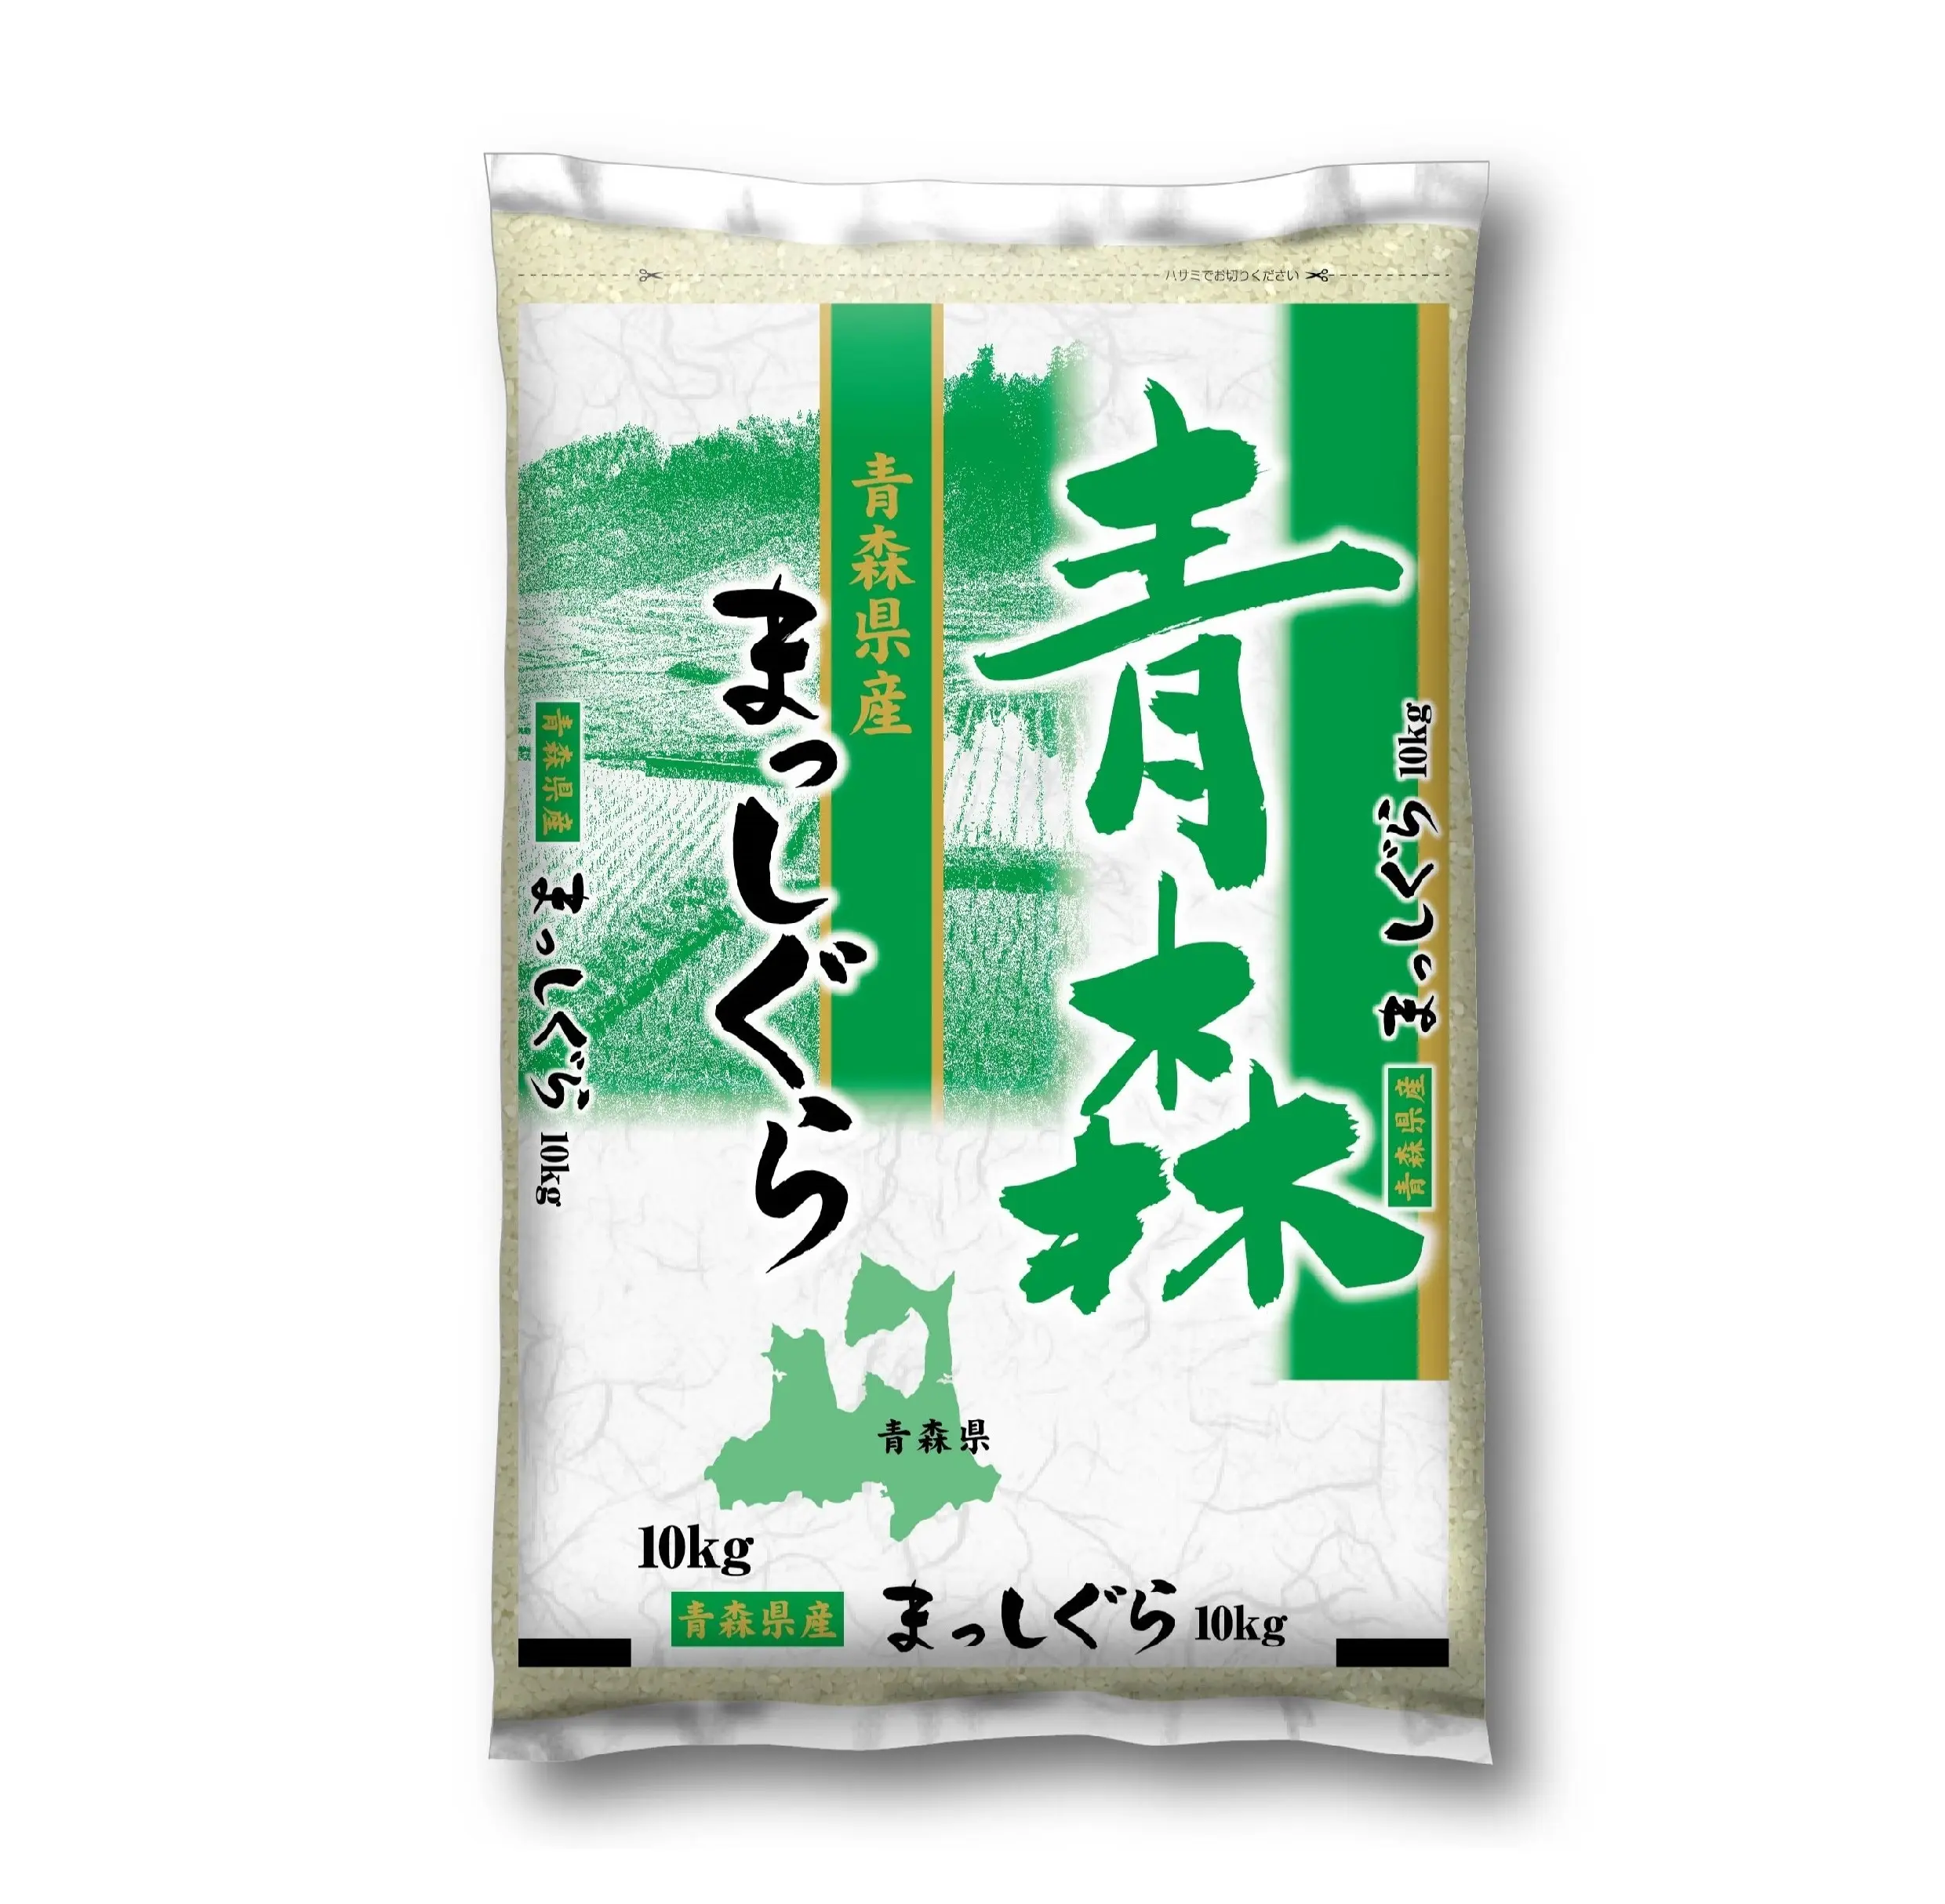 אומורי מסיגורה יצוא מסורתי בתפזורת אורז לבן סיטונאי